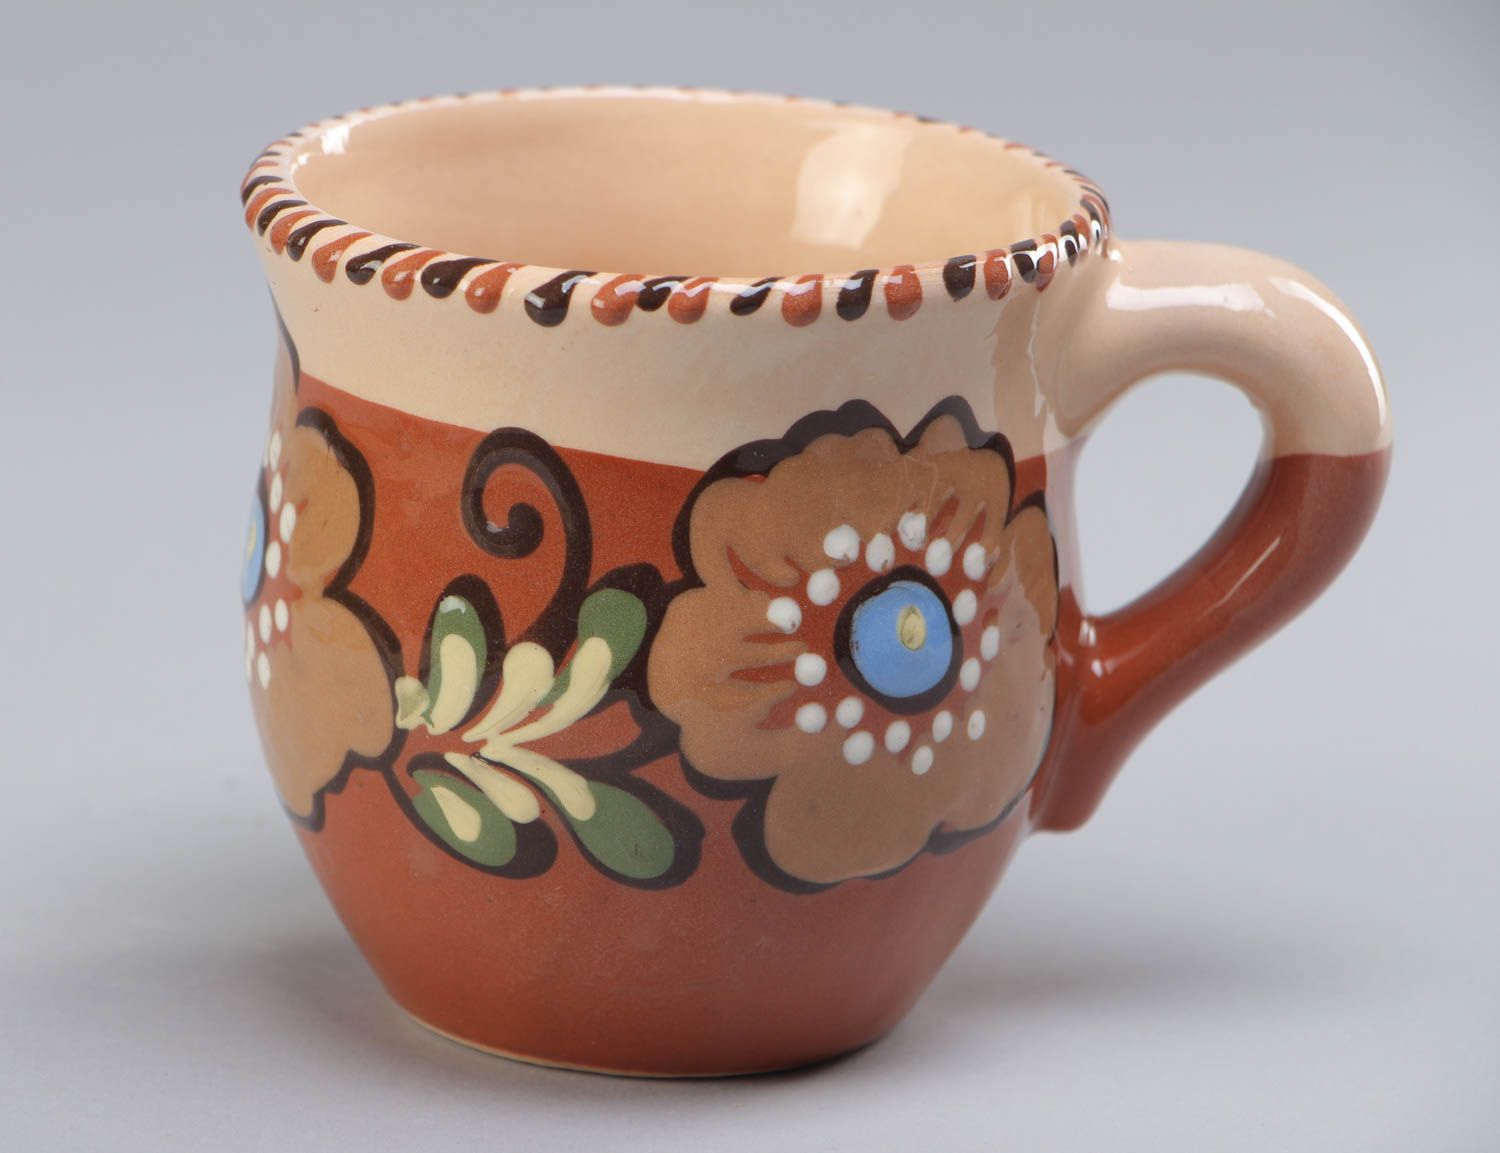 Taza de cerámica decorada original 250 ml hecha a mano pintada con esmaltes foto 2